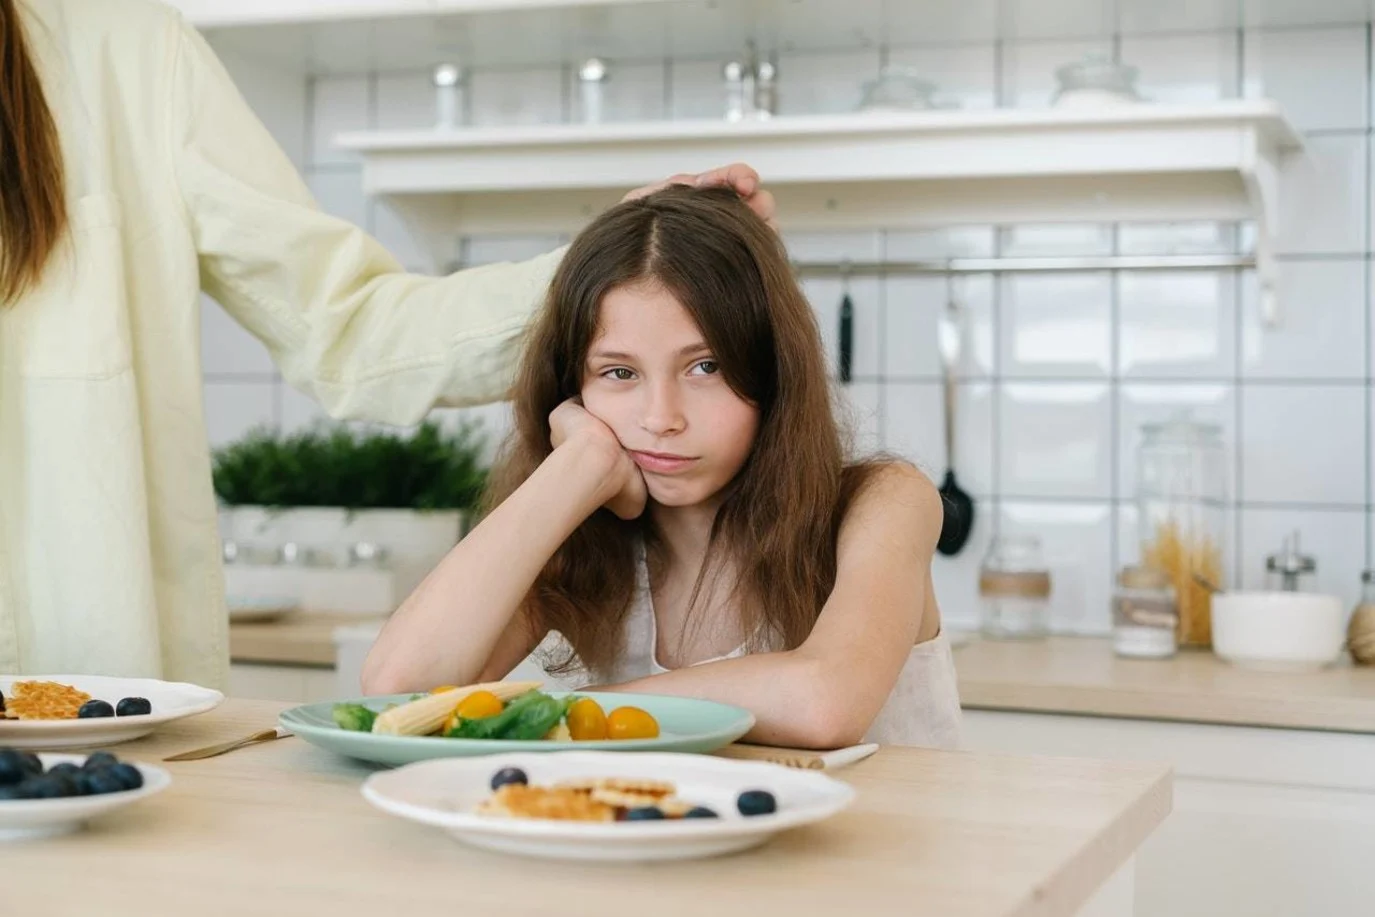 اكتئاب الطفولة تؤدي إلى ارتفاع خطر الإفراط في تناول الطعام لدى الشباب